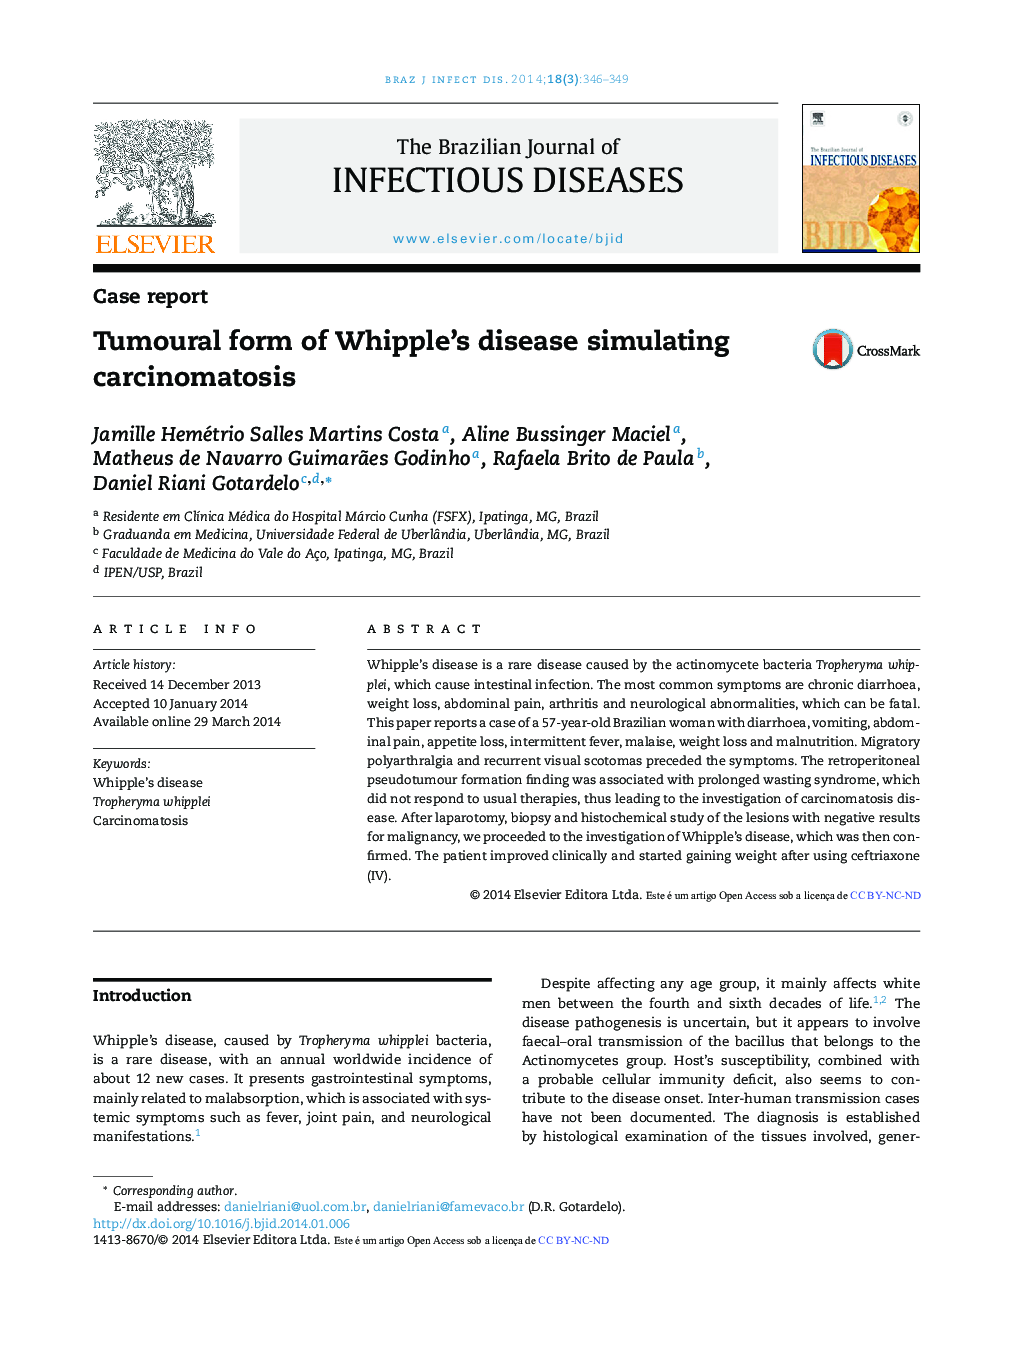 Tumoural form of Whipple's disease simulating carcinomatosis